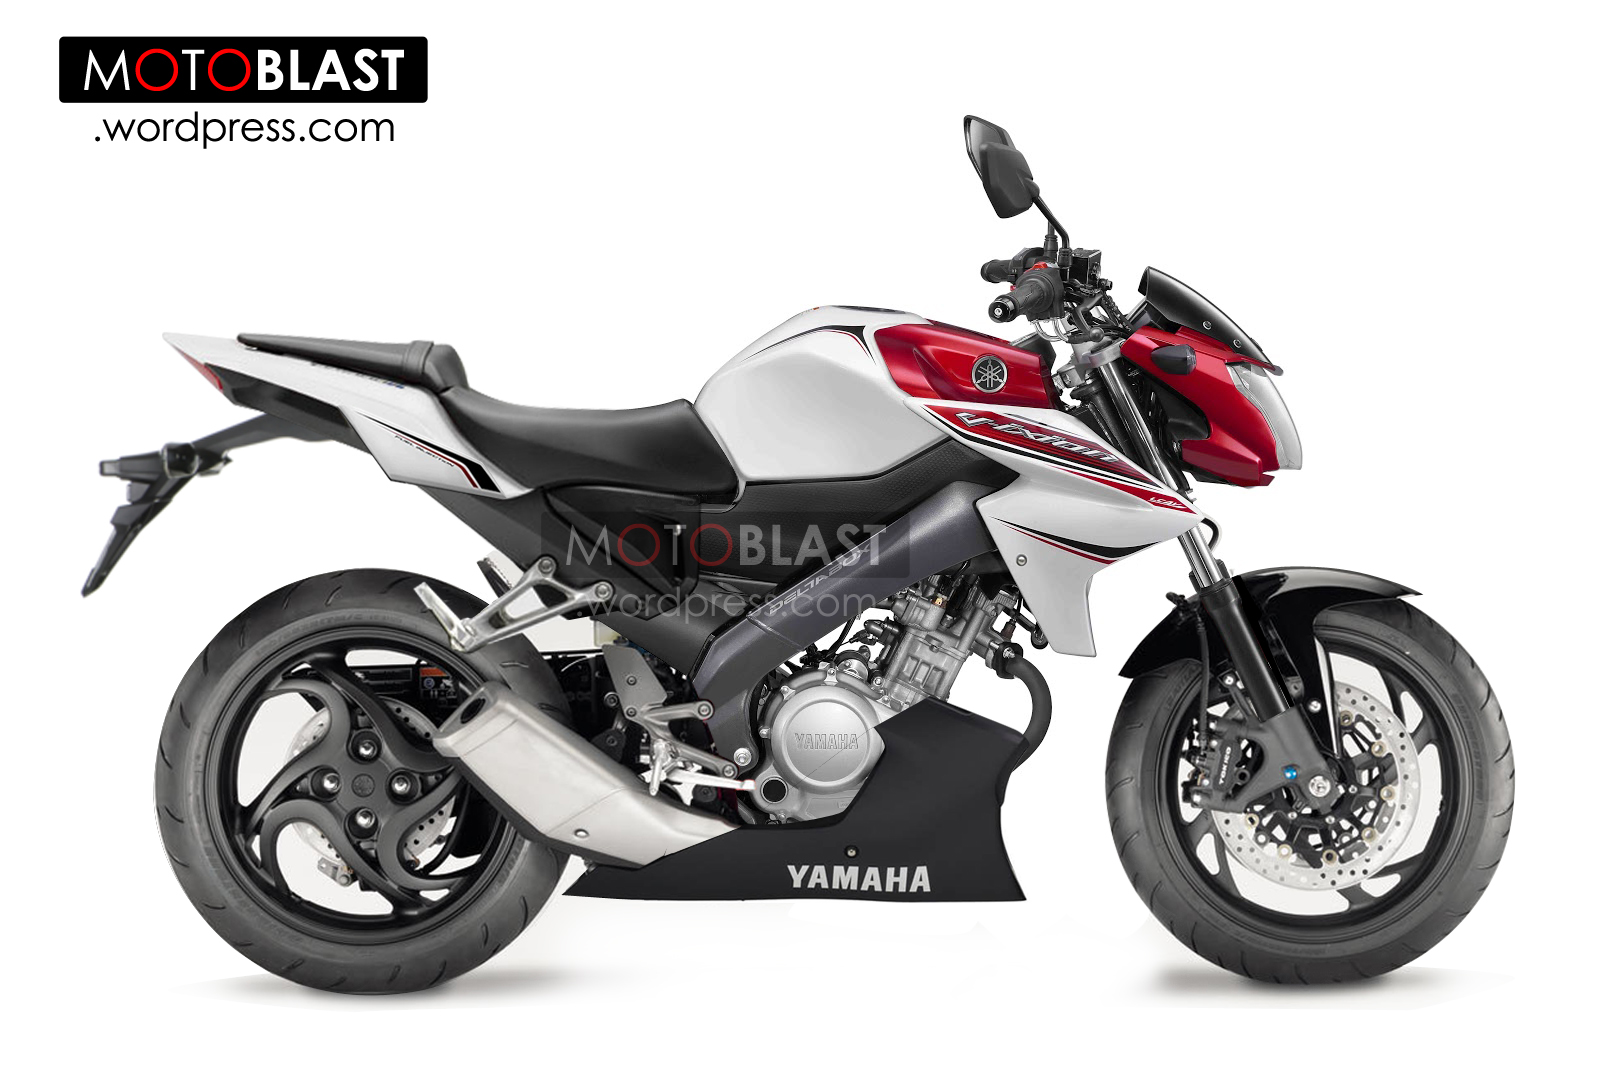 Yamaha Vixion Lightning 2014 Black Bolt Motor Sport Jalanan